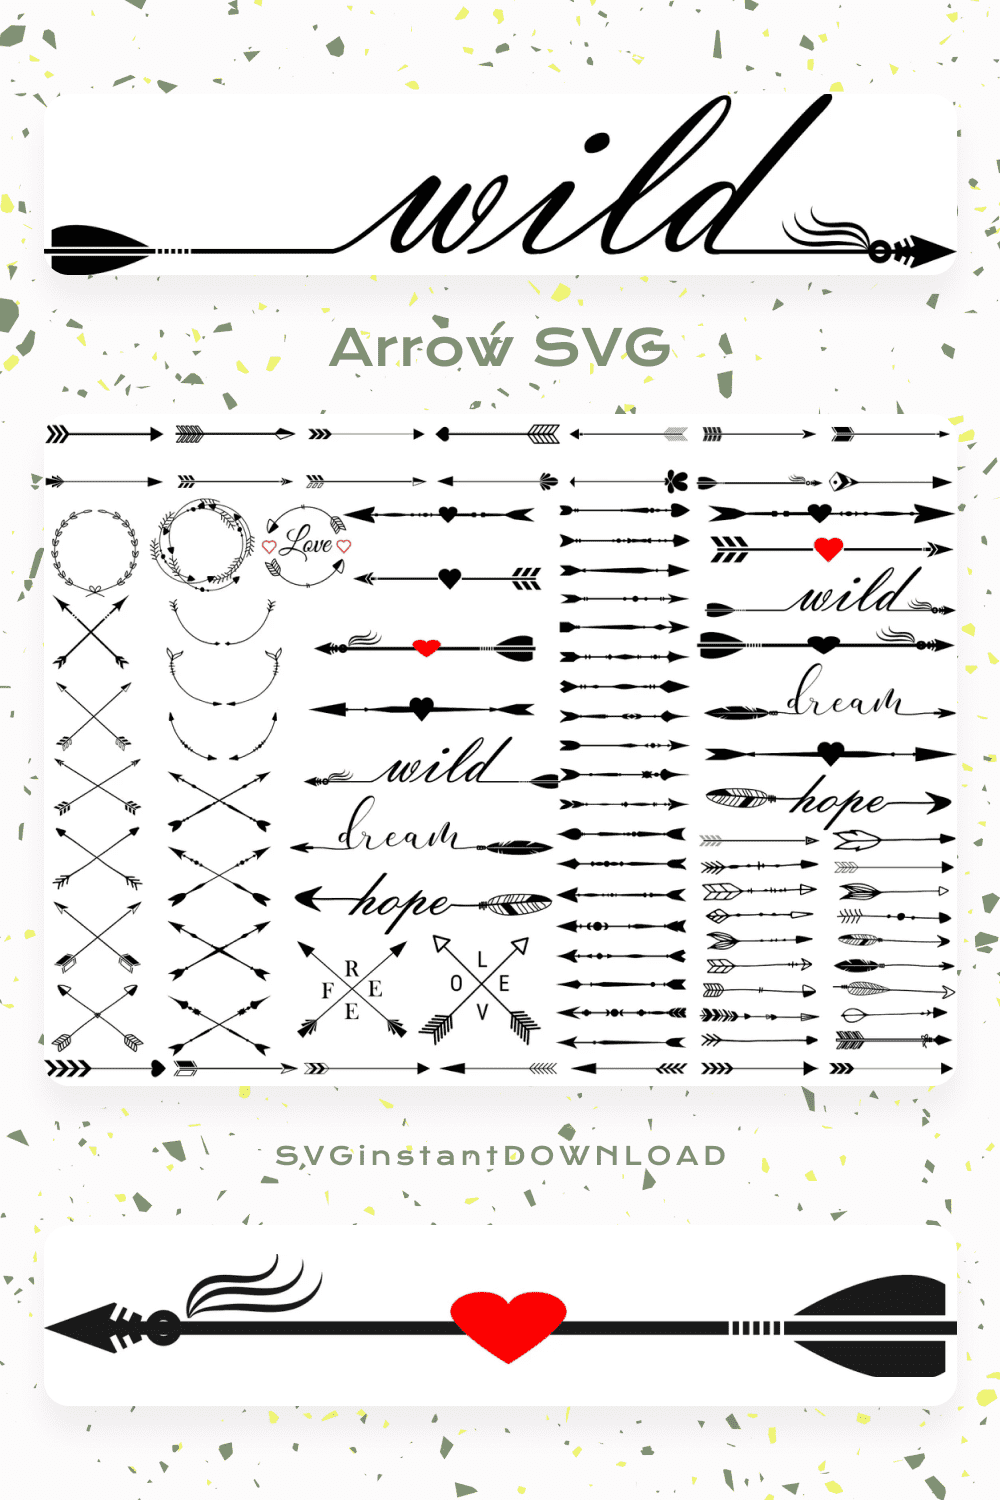 Arrow SVG Files.